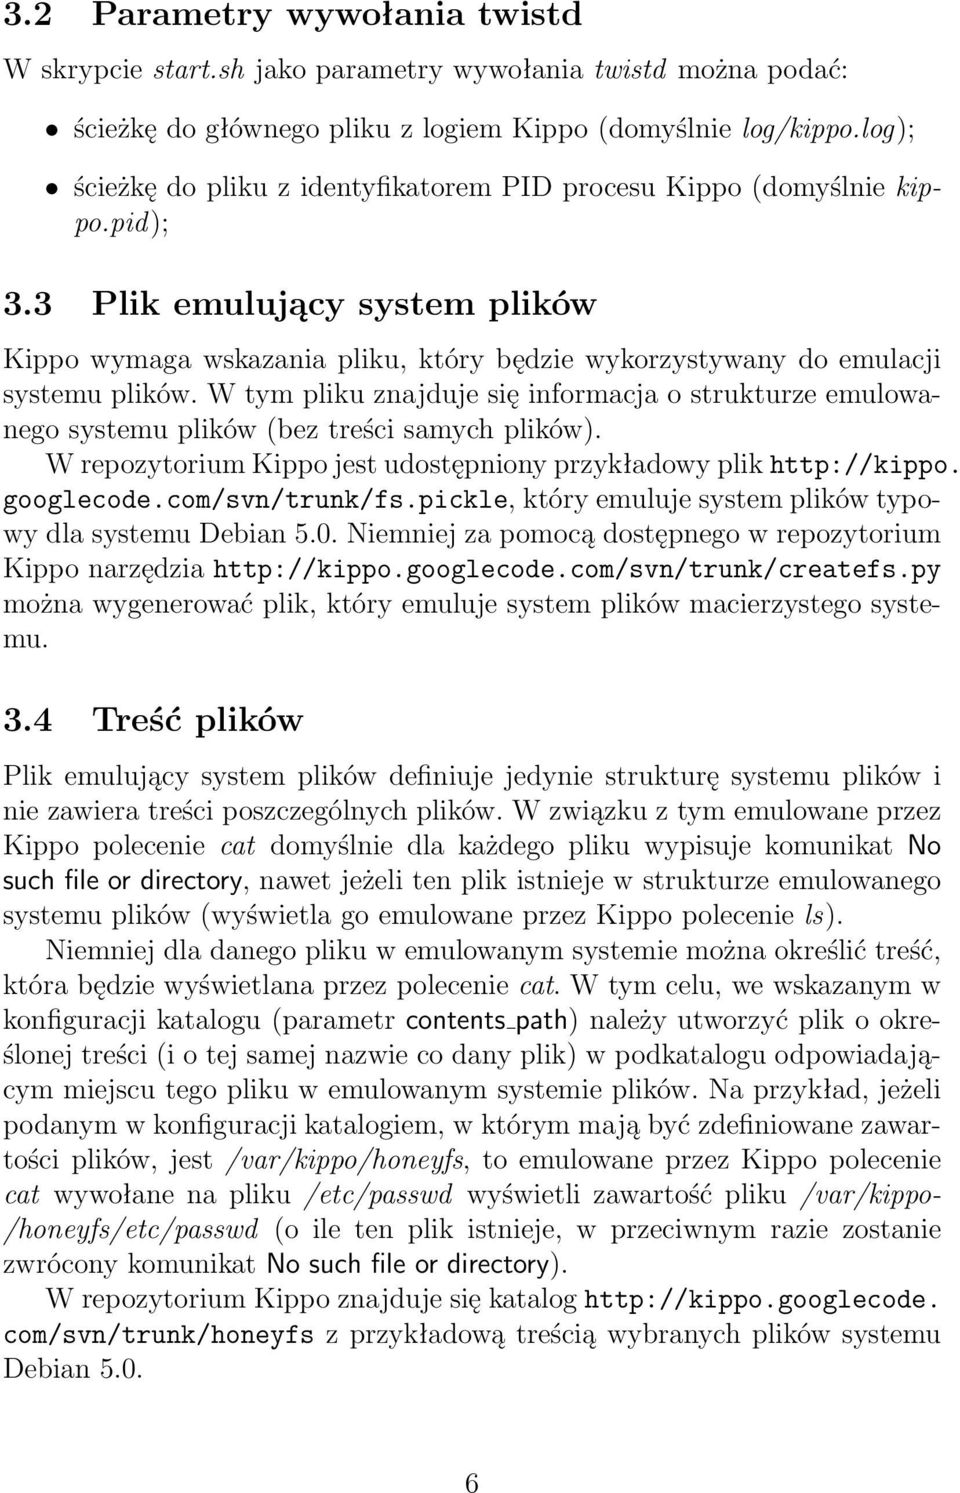 W tym pliku znajduje się informacja o strukturze emulowanego systemu plików (bez treści samych plików). W repozytorium Kippo jest udostępniony przykładowy plik http://kippo. googlecode.